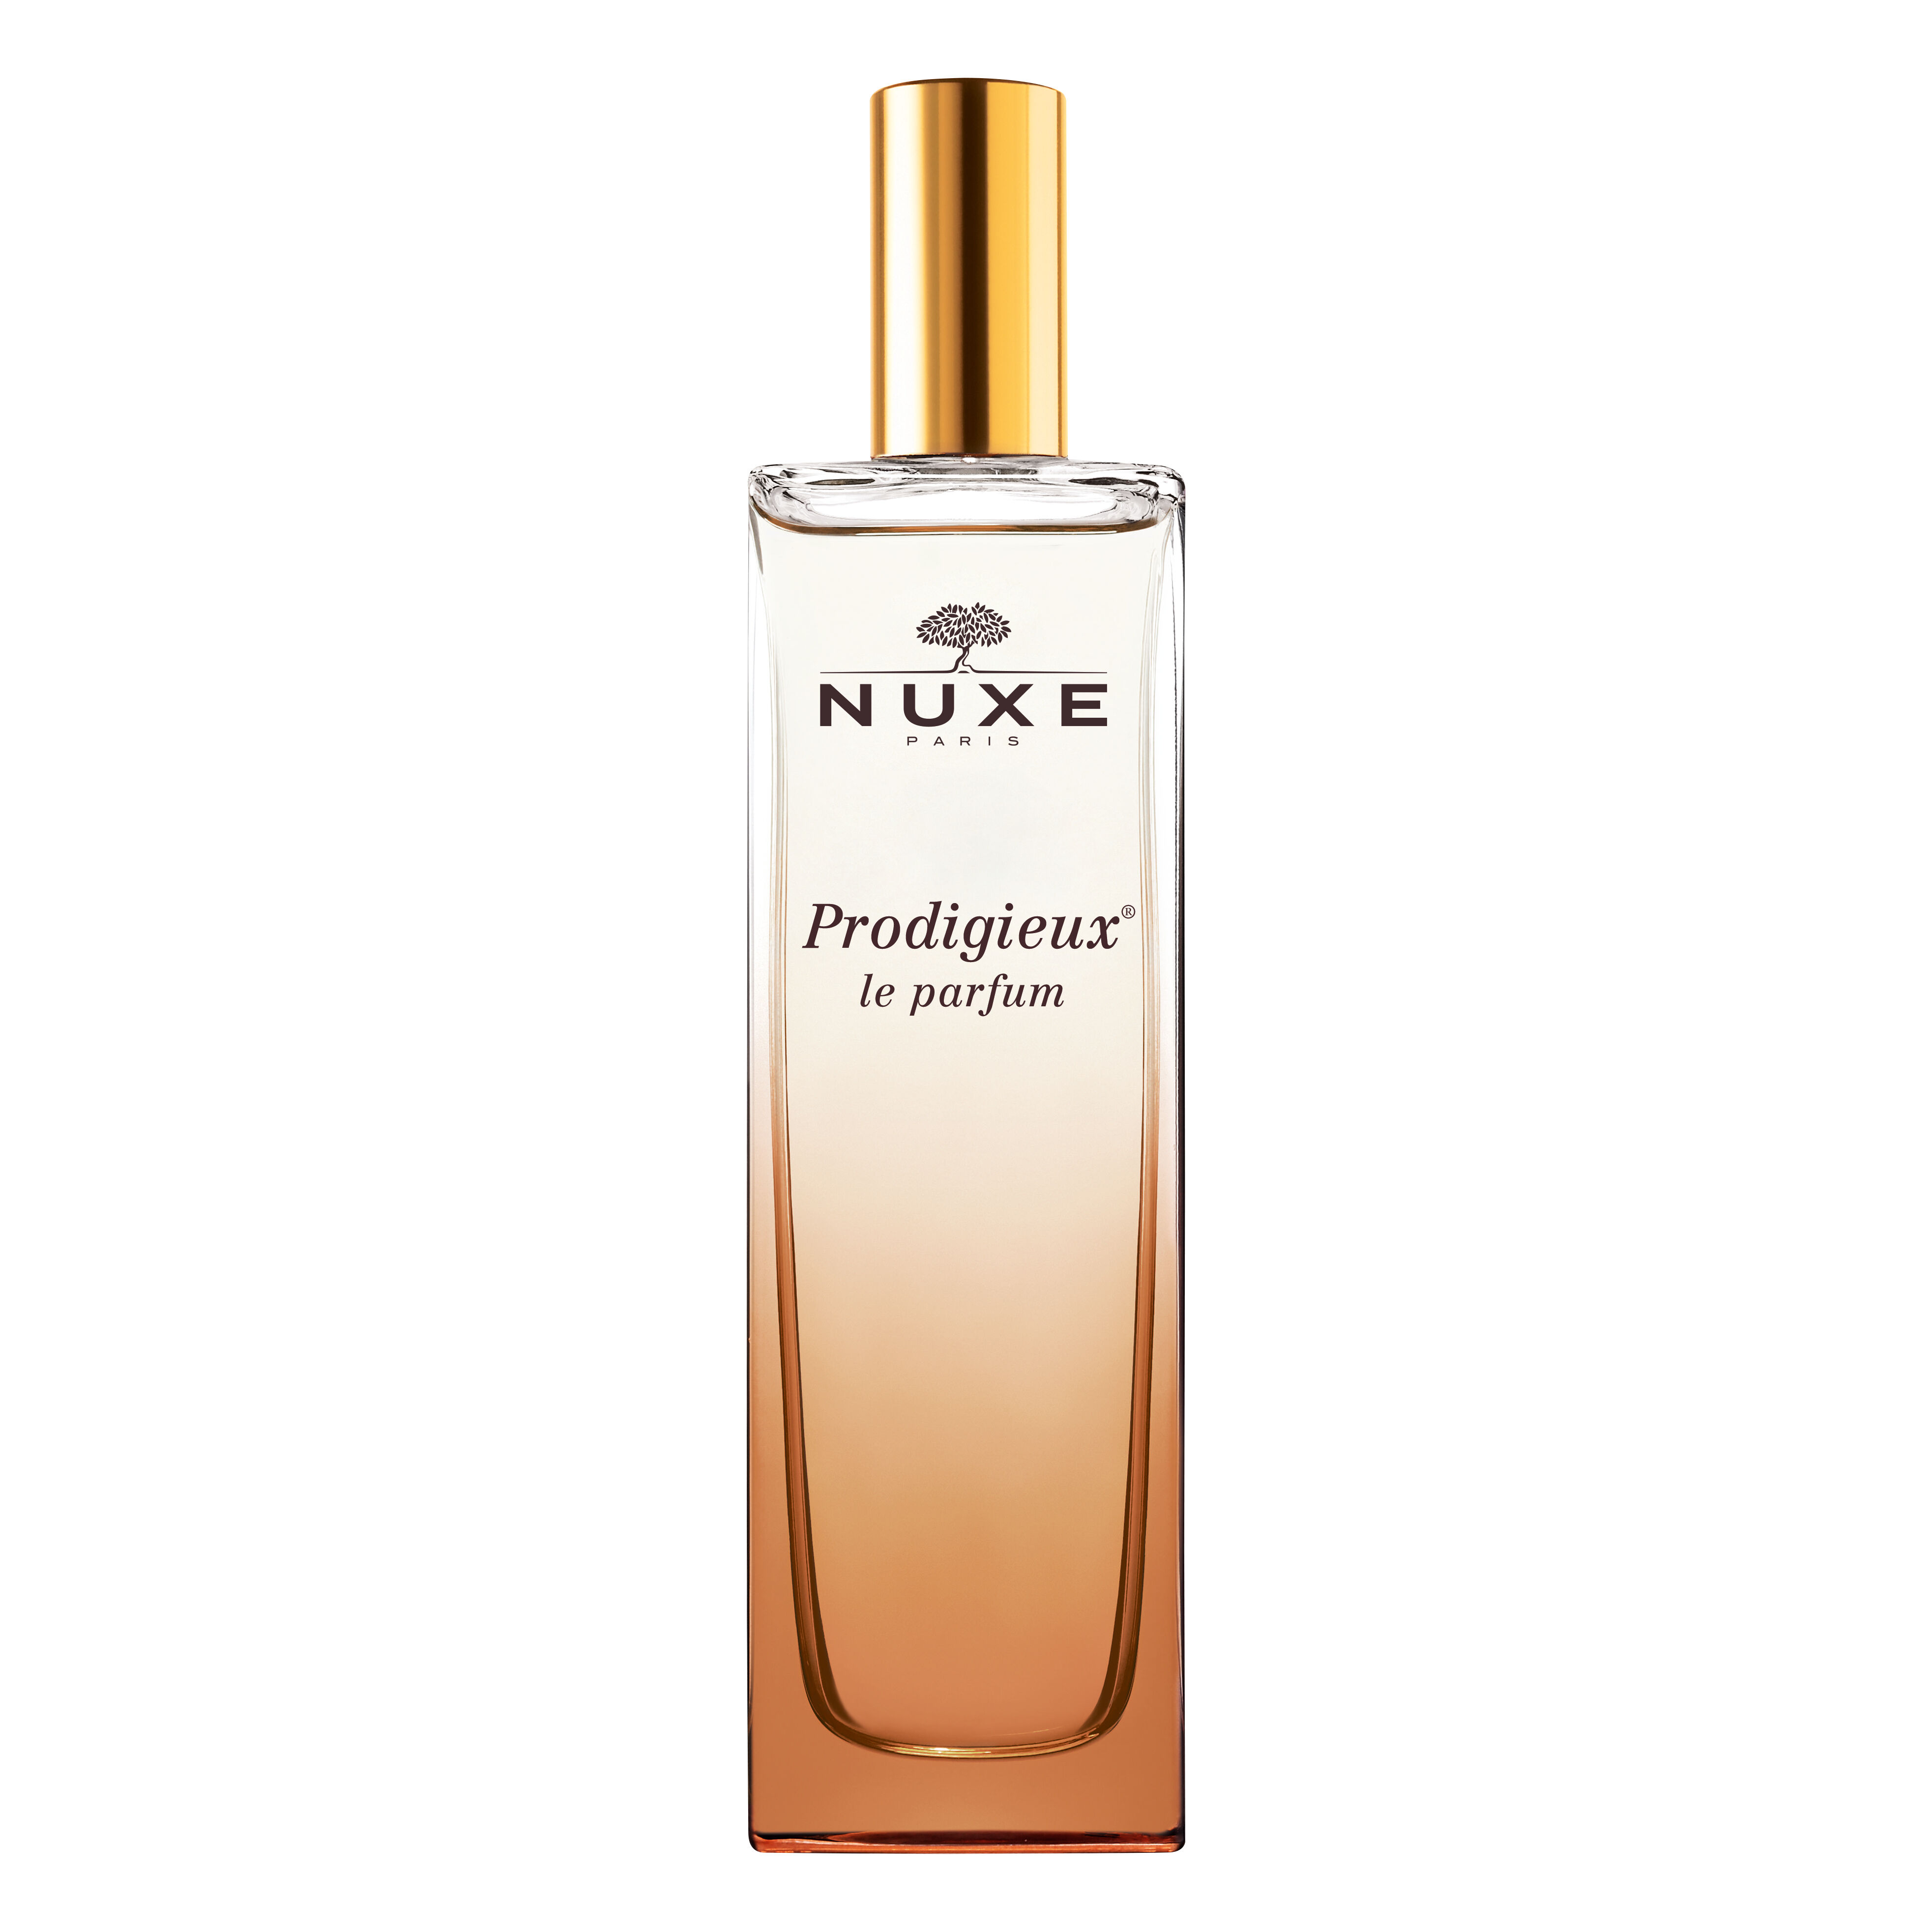 Laboratoire Nuxe Italia Srl Nuxe Prodigieux Le Parfum 50ml